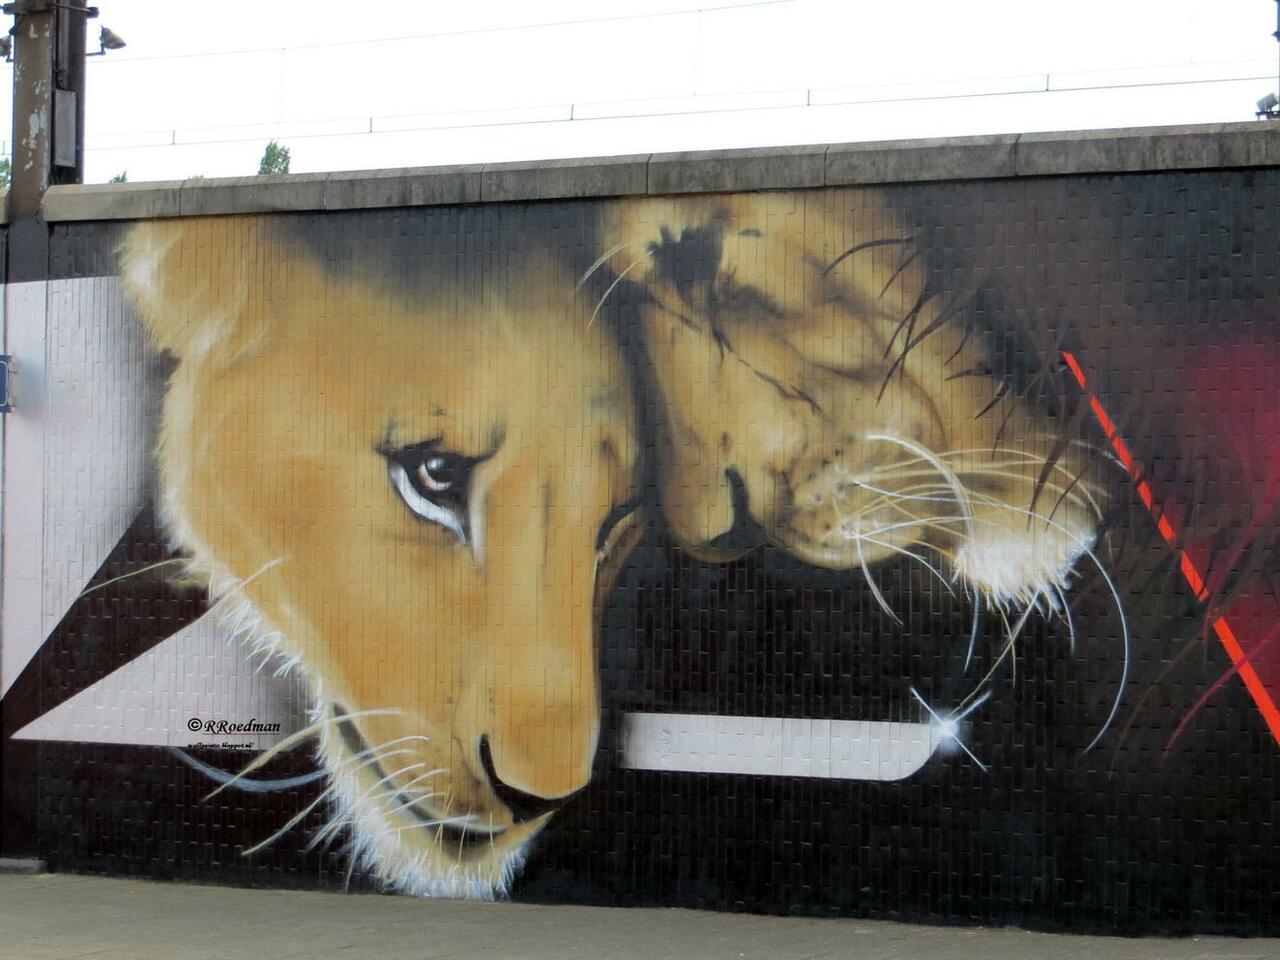 RT @RRoedman: #streetart #graffiti #mural #lions on station #Berchem/ #Antwerp from #Cazn ,3 pics at http://wallpaintss.blogspot.nl http://t.co/xLea9501HF